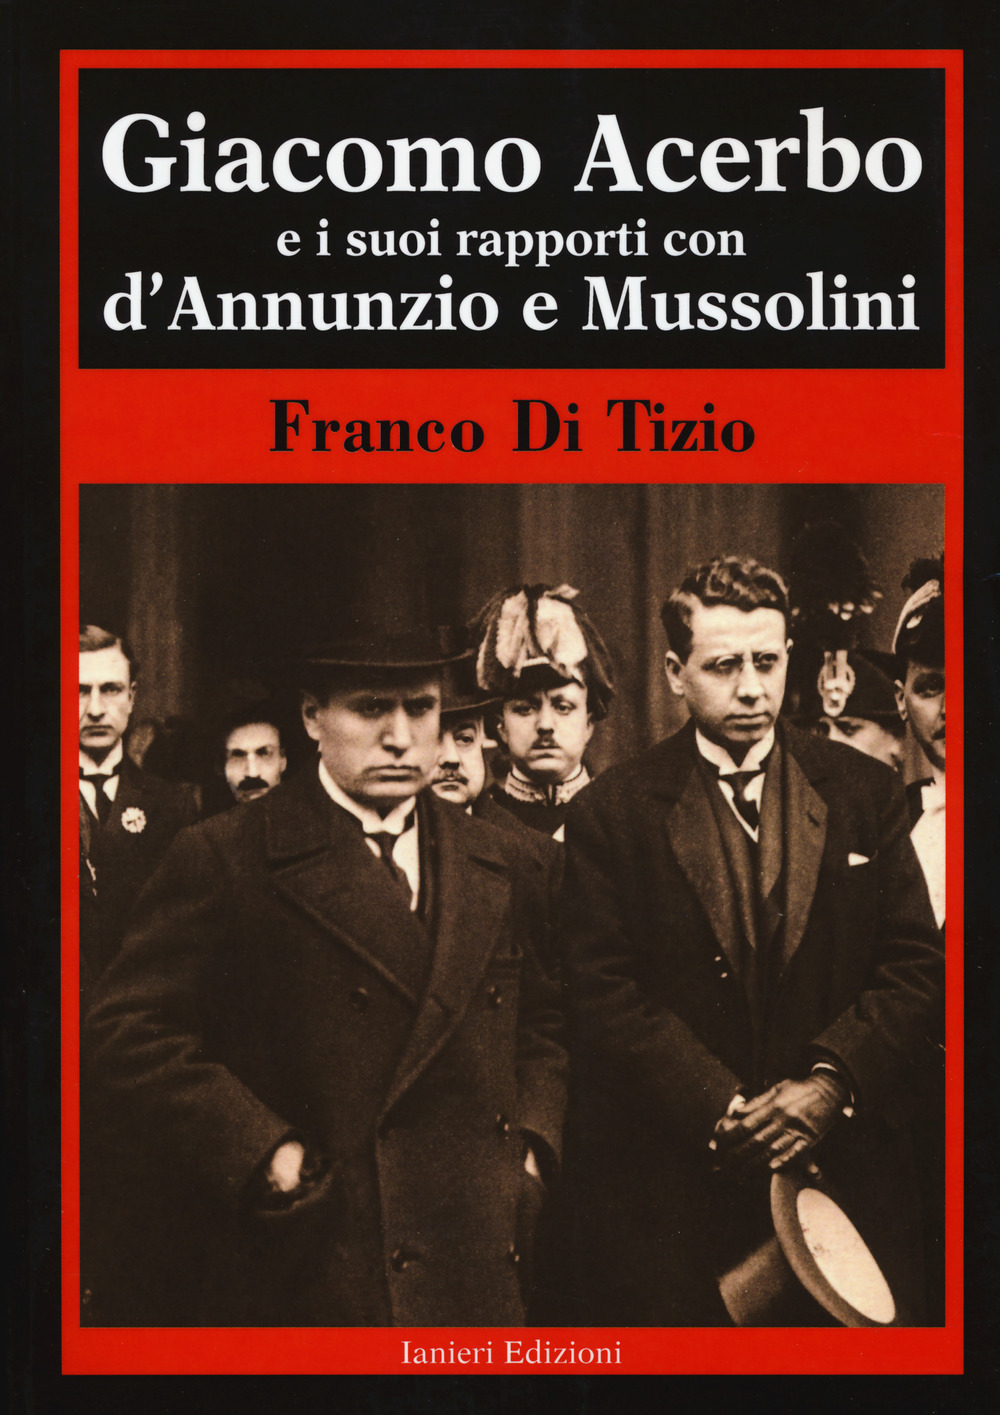 Giacomo Acerbo e i suoi rapporti con D'Annunzio e Mussolini